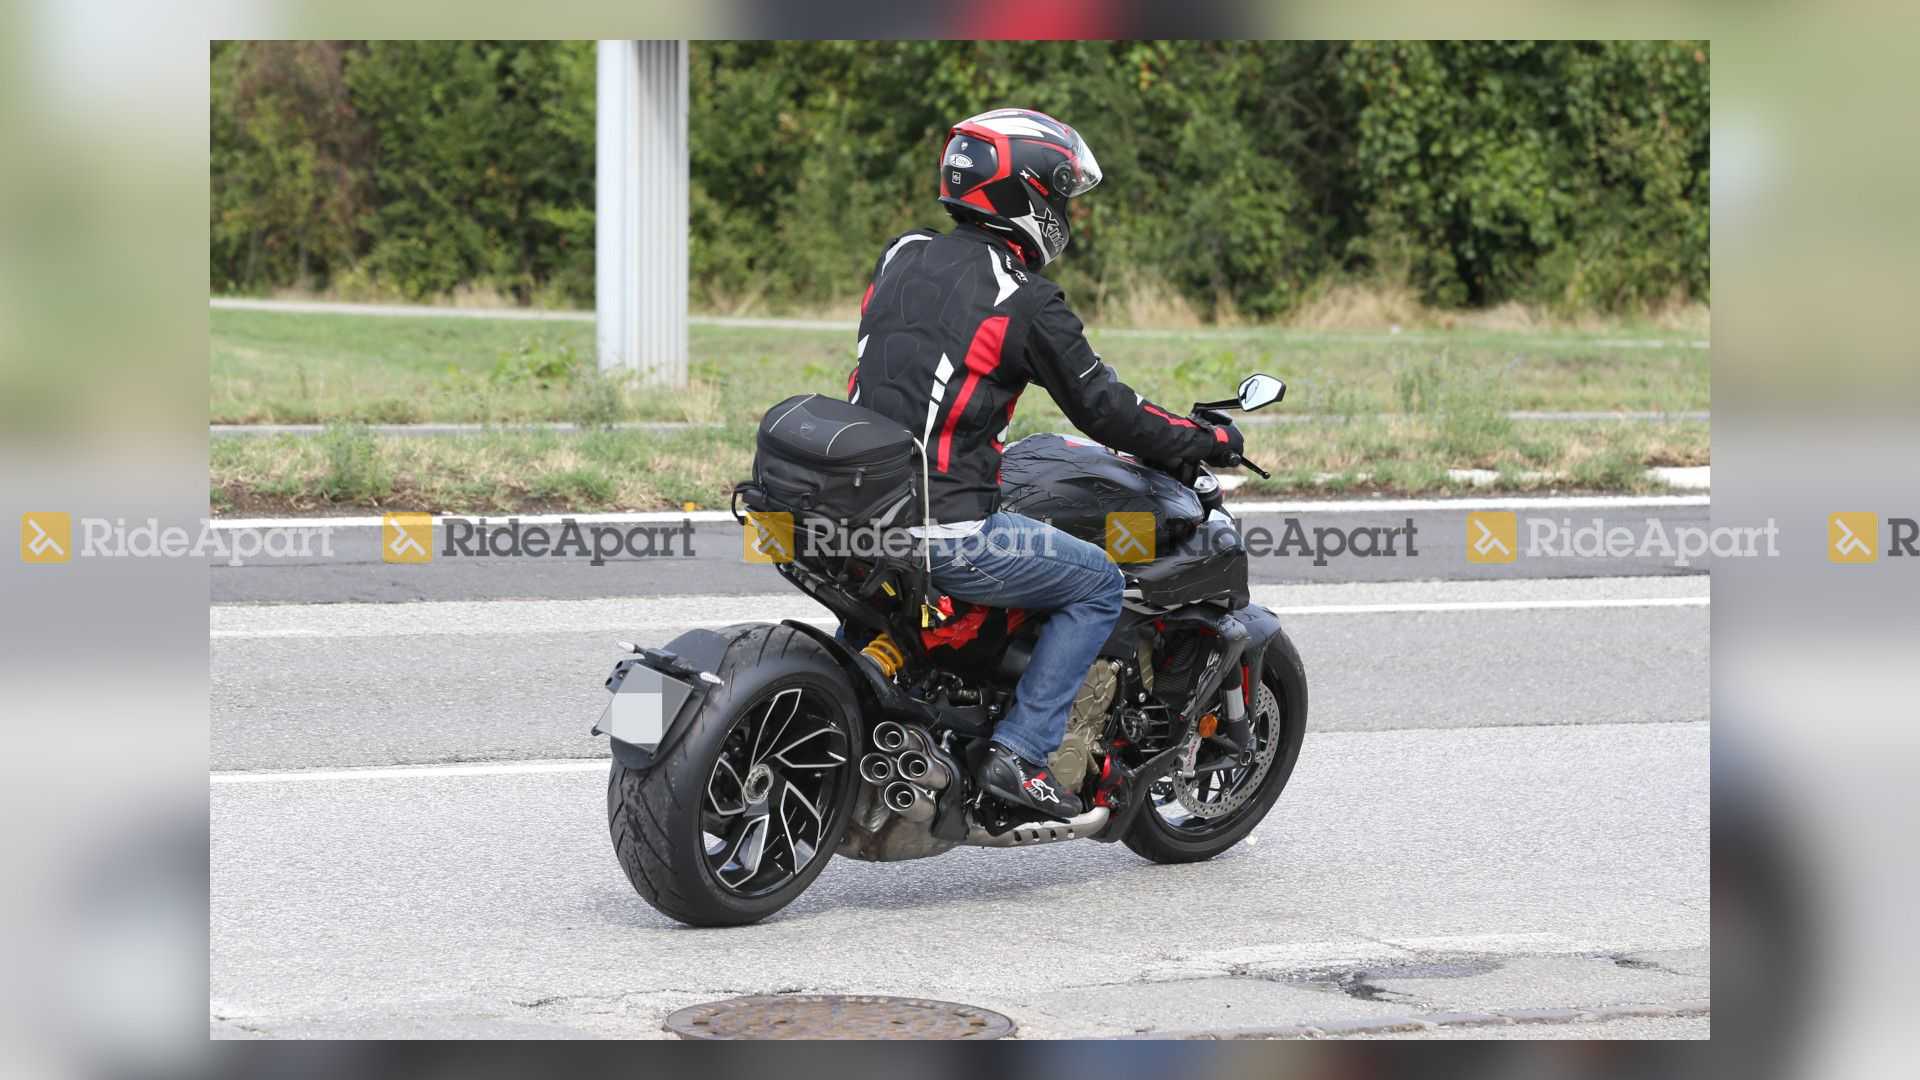 Ducati Diavel V4 Spy Photos Right Rear Angle View 3